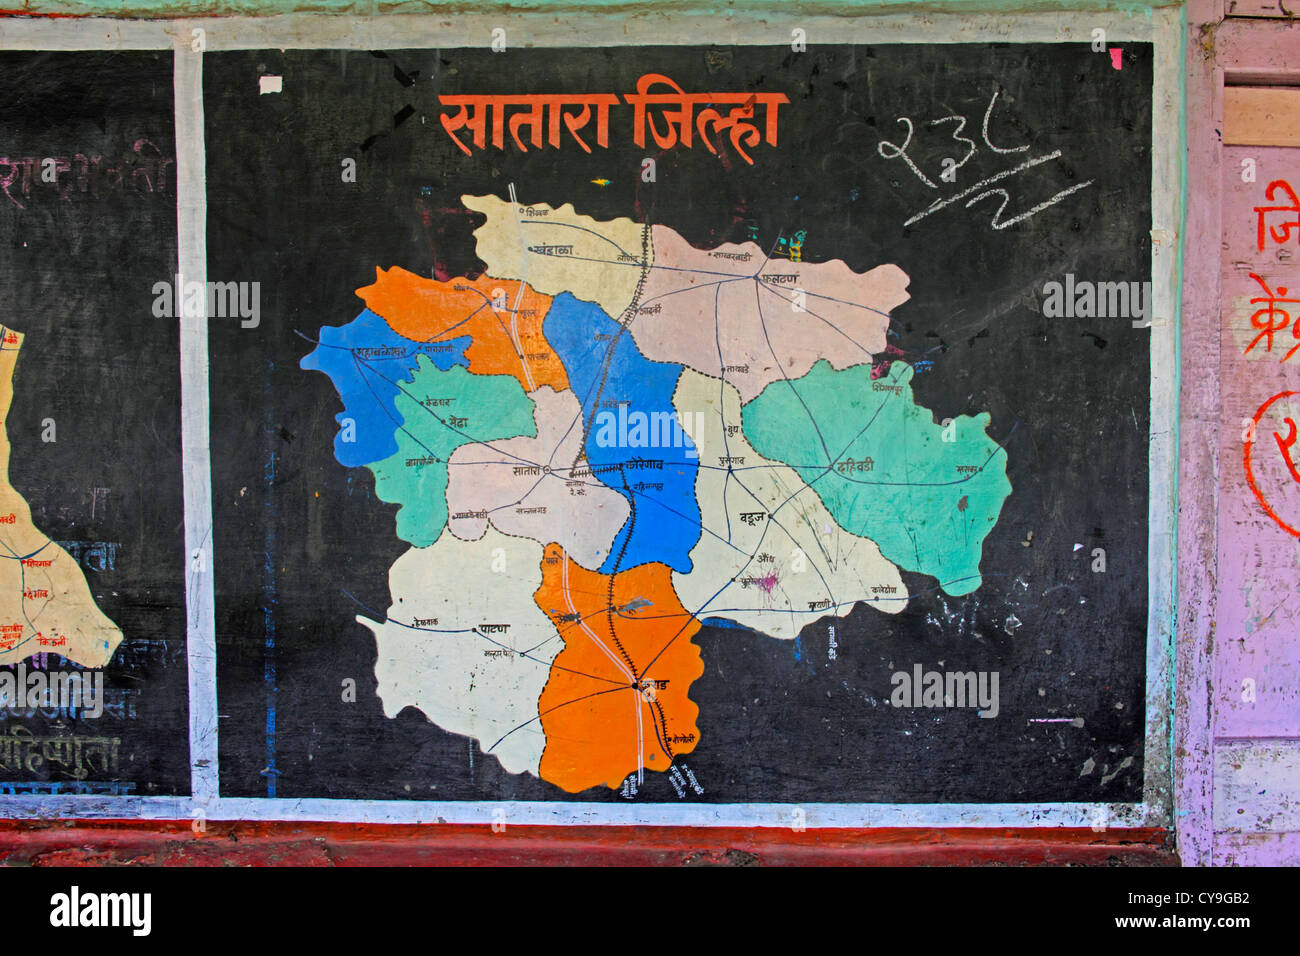 Carte de Aulnay-sous-district dans le Maharashtra, Inde Banque D'Images